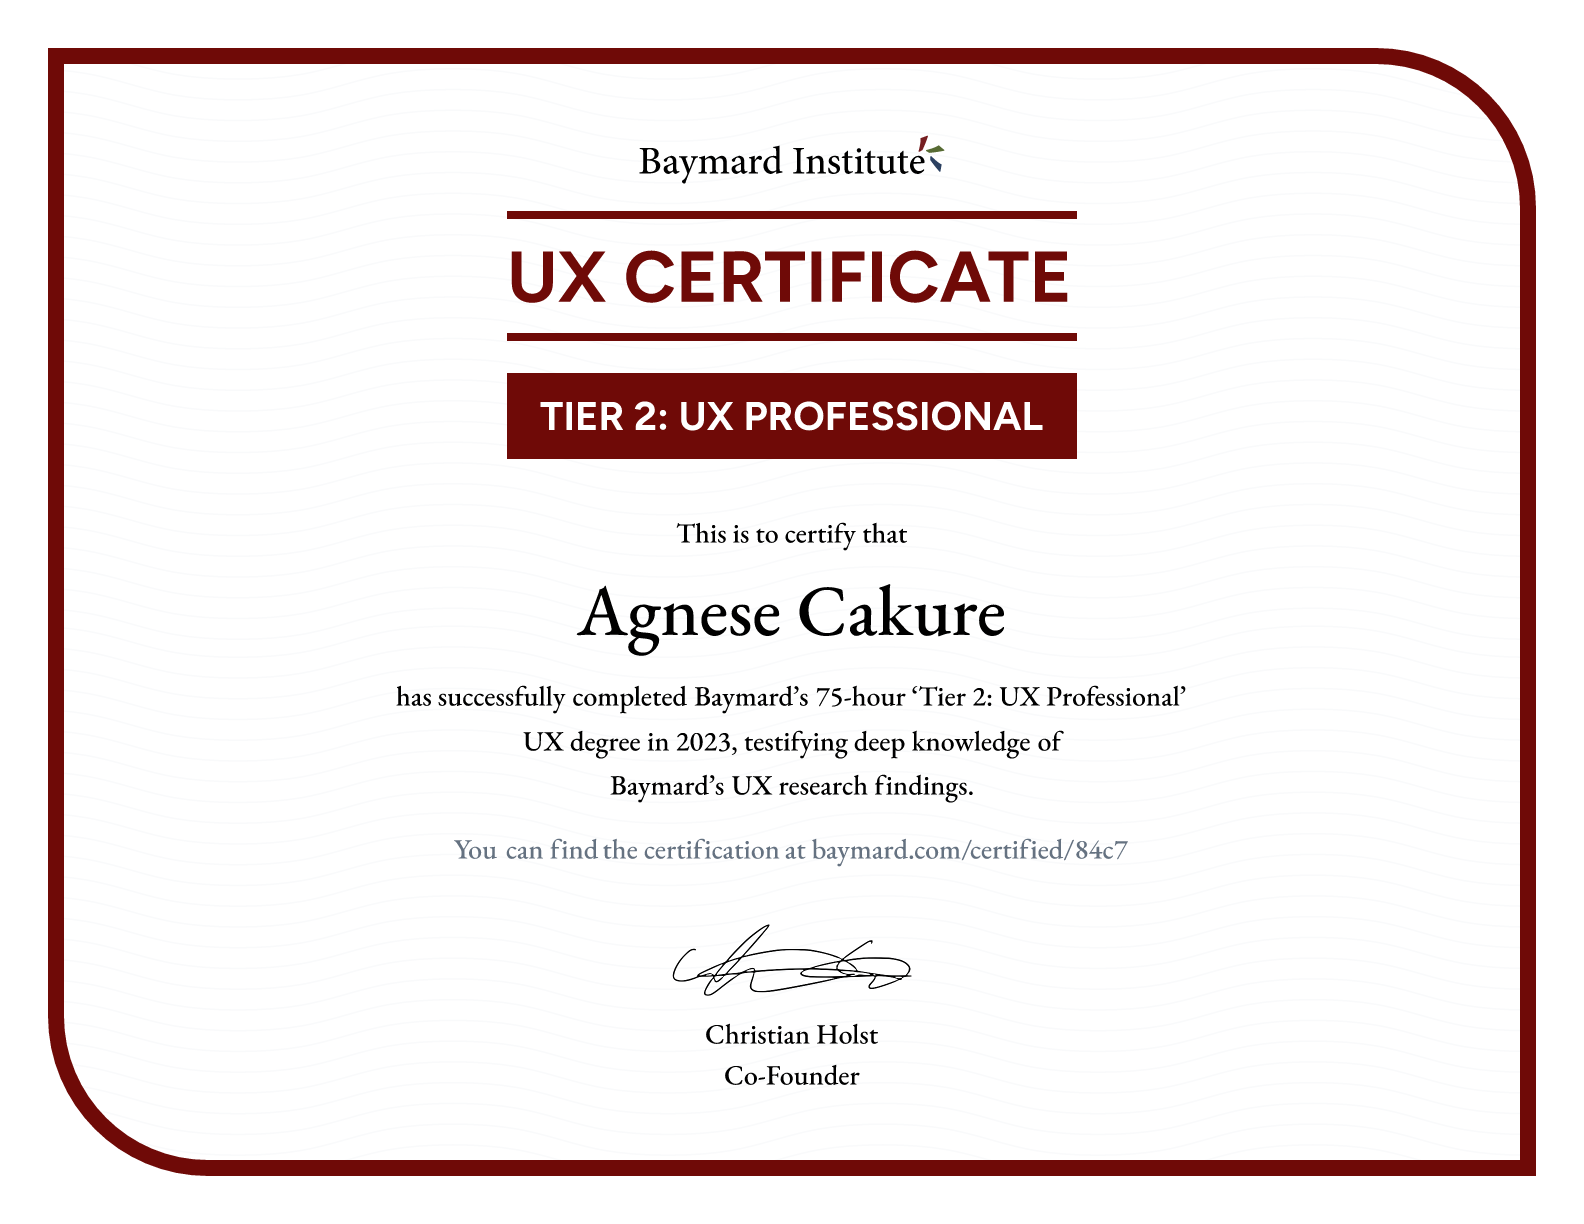 Agnese Cakure’s certificate